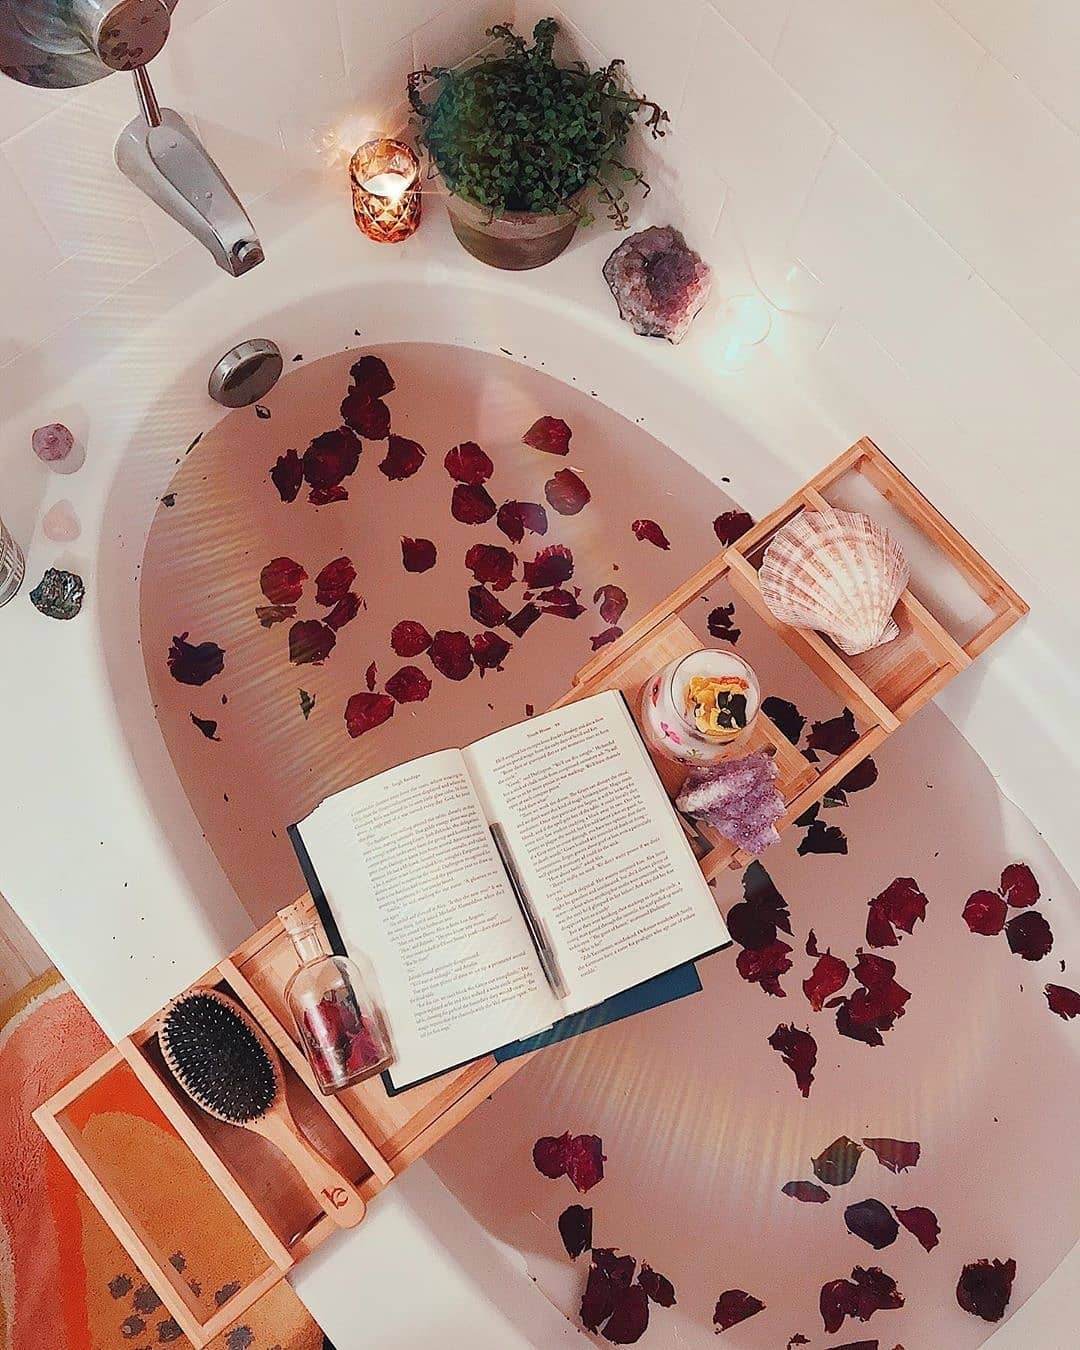 Banho aromatizado e relaxante (Foto: reprodução Instagram @cosmicvaleria)